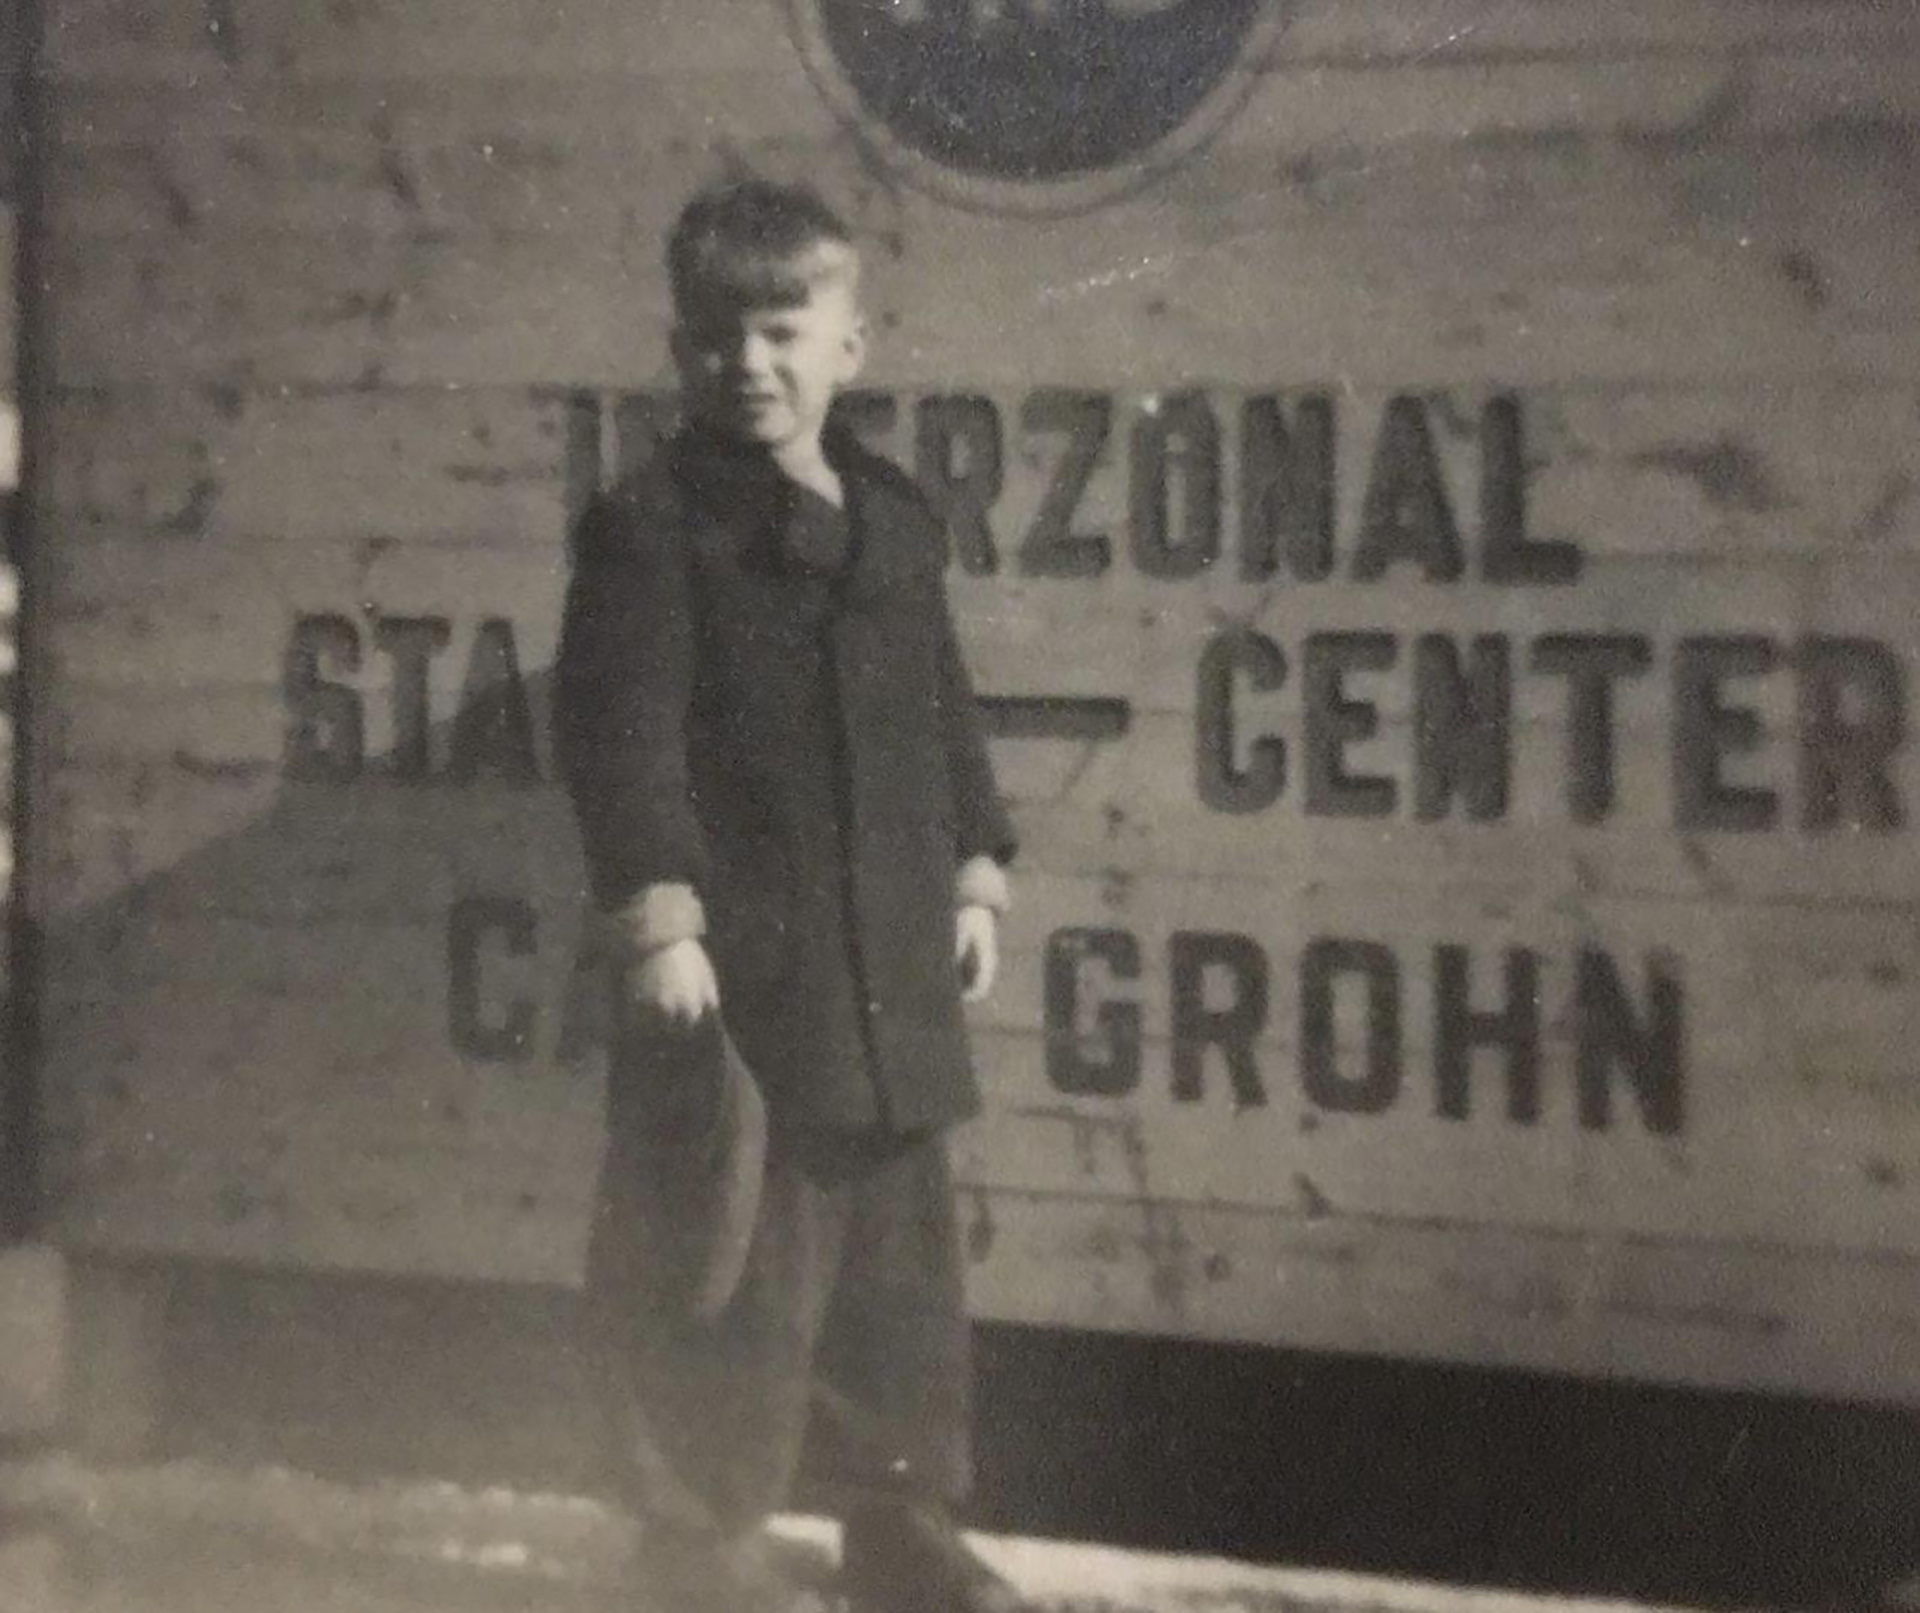 Diether Zámolo a los 6 años, edad en la que dejó Austria escapando de la Segunda Guerra Mundial para radicarse en la Argentina